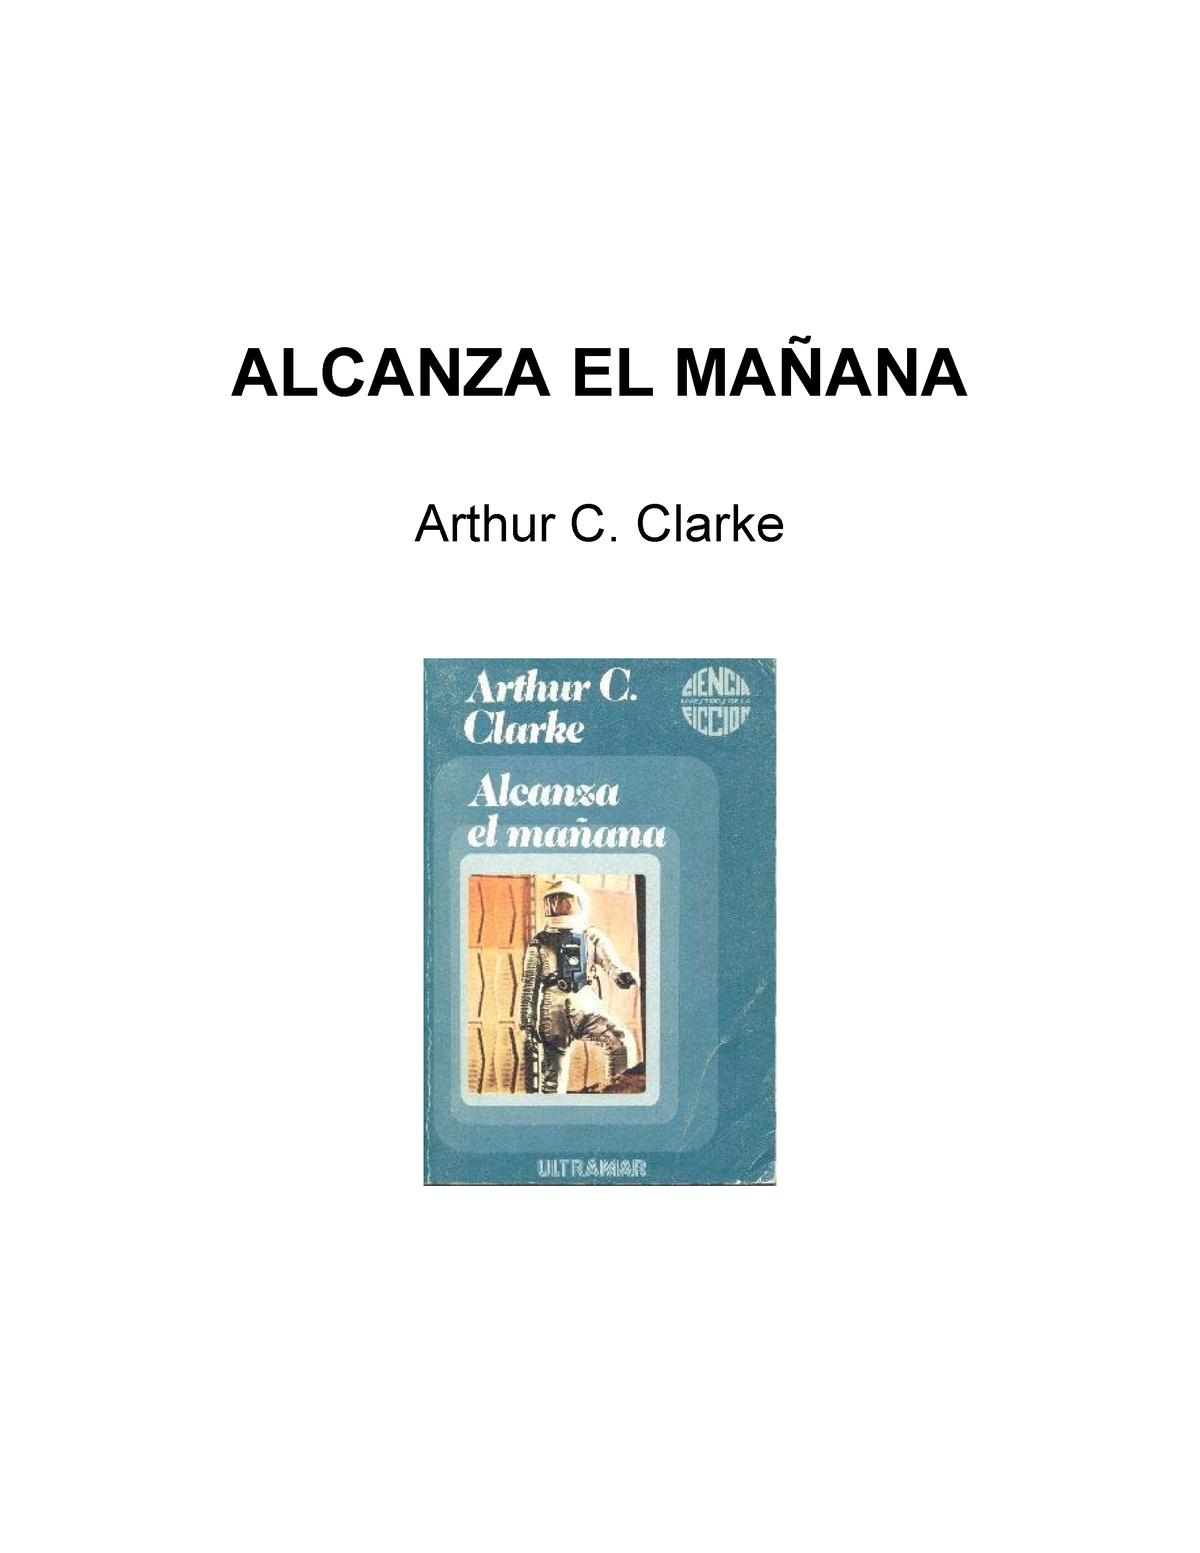 Arthur C. Clarke - Alcanza el mañana - ALCANZA EL MAÑANA Arthur C ...